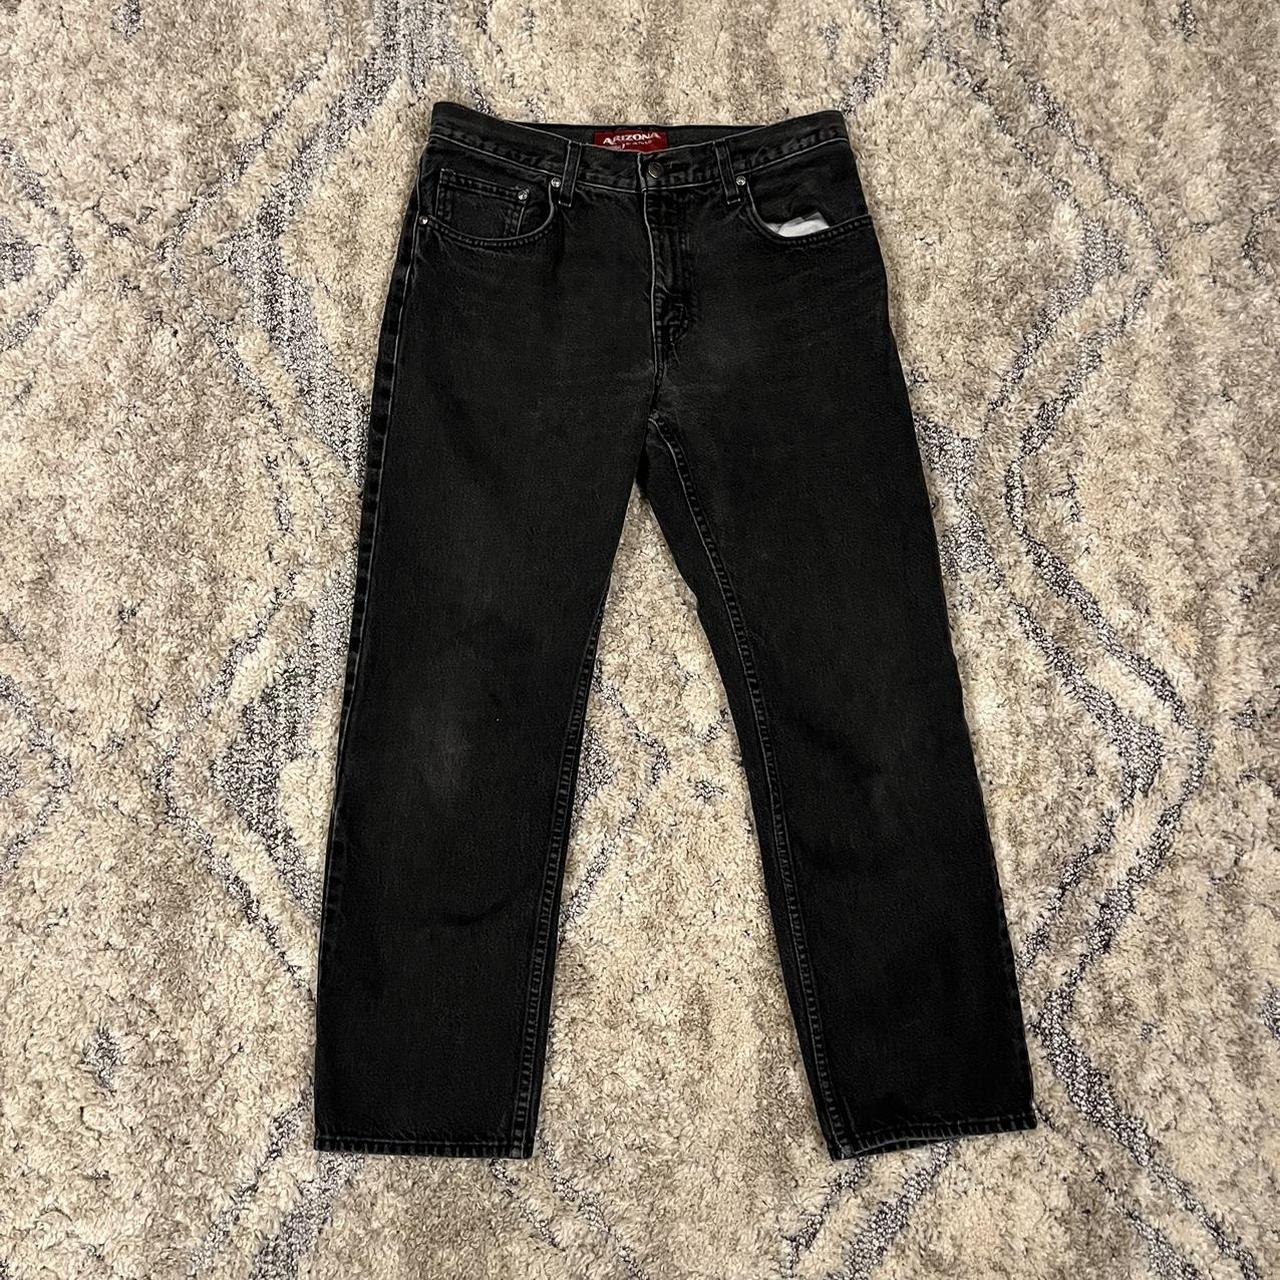 Washed black pants 33x30 - Depop